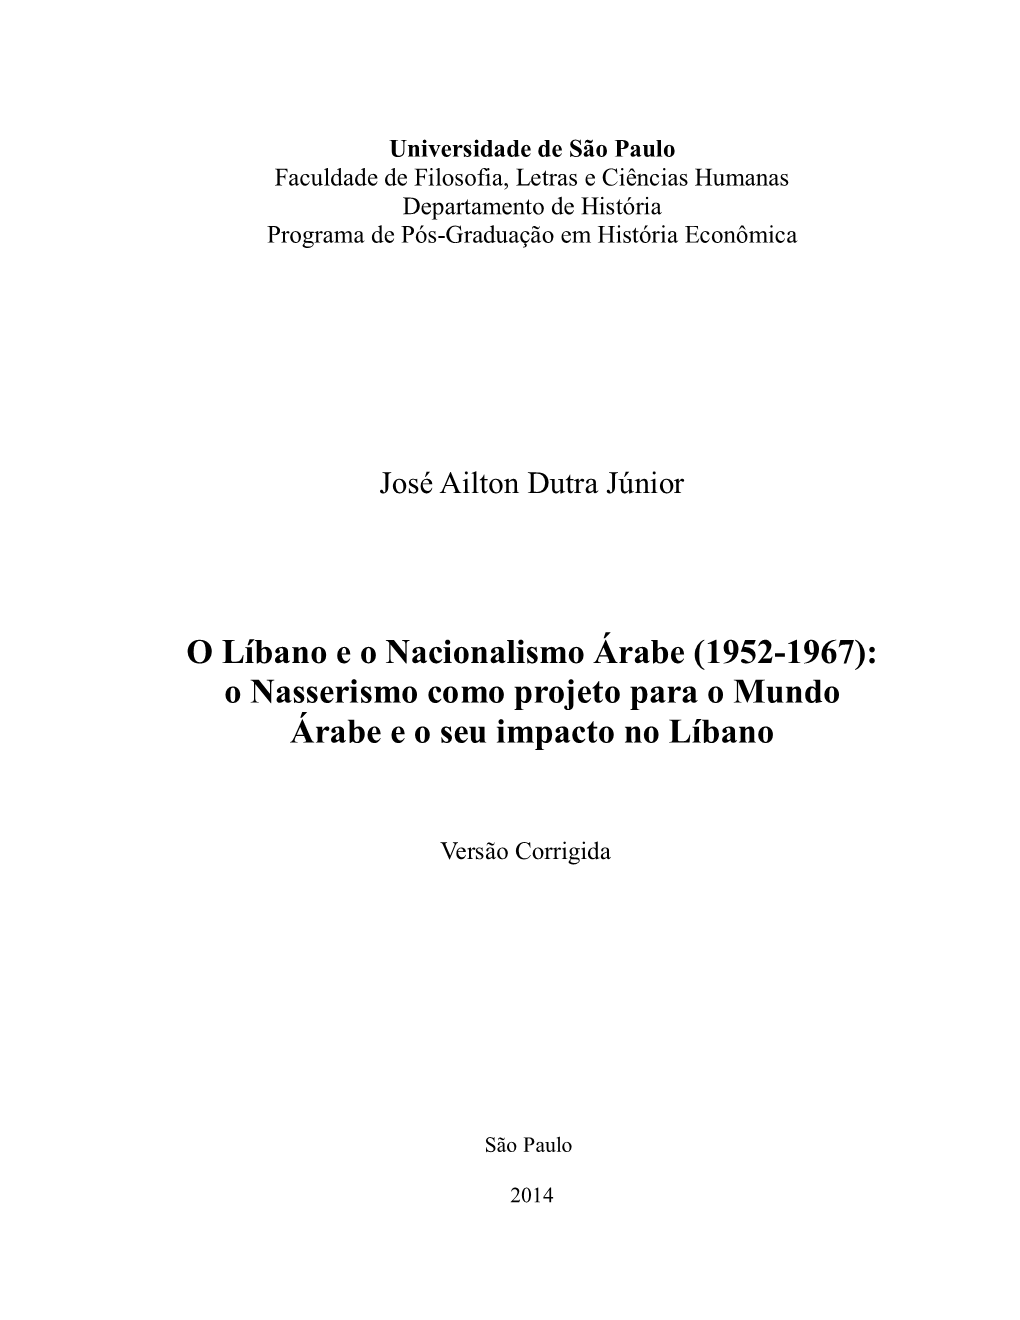 O Líbano E O Nacionalismo Árabe (1952-1967): O Nasserismo Como Projeto Para O Mundo Árabe E O Seu Impacto No Líbano